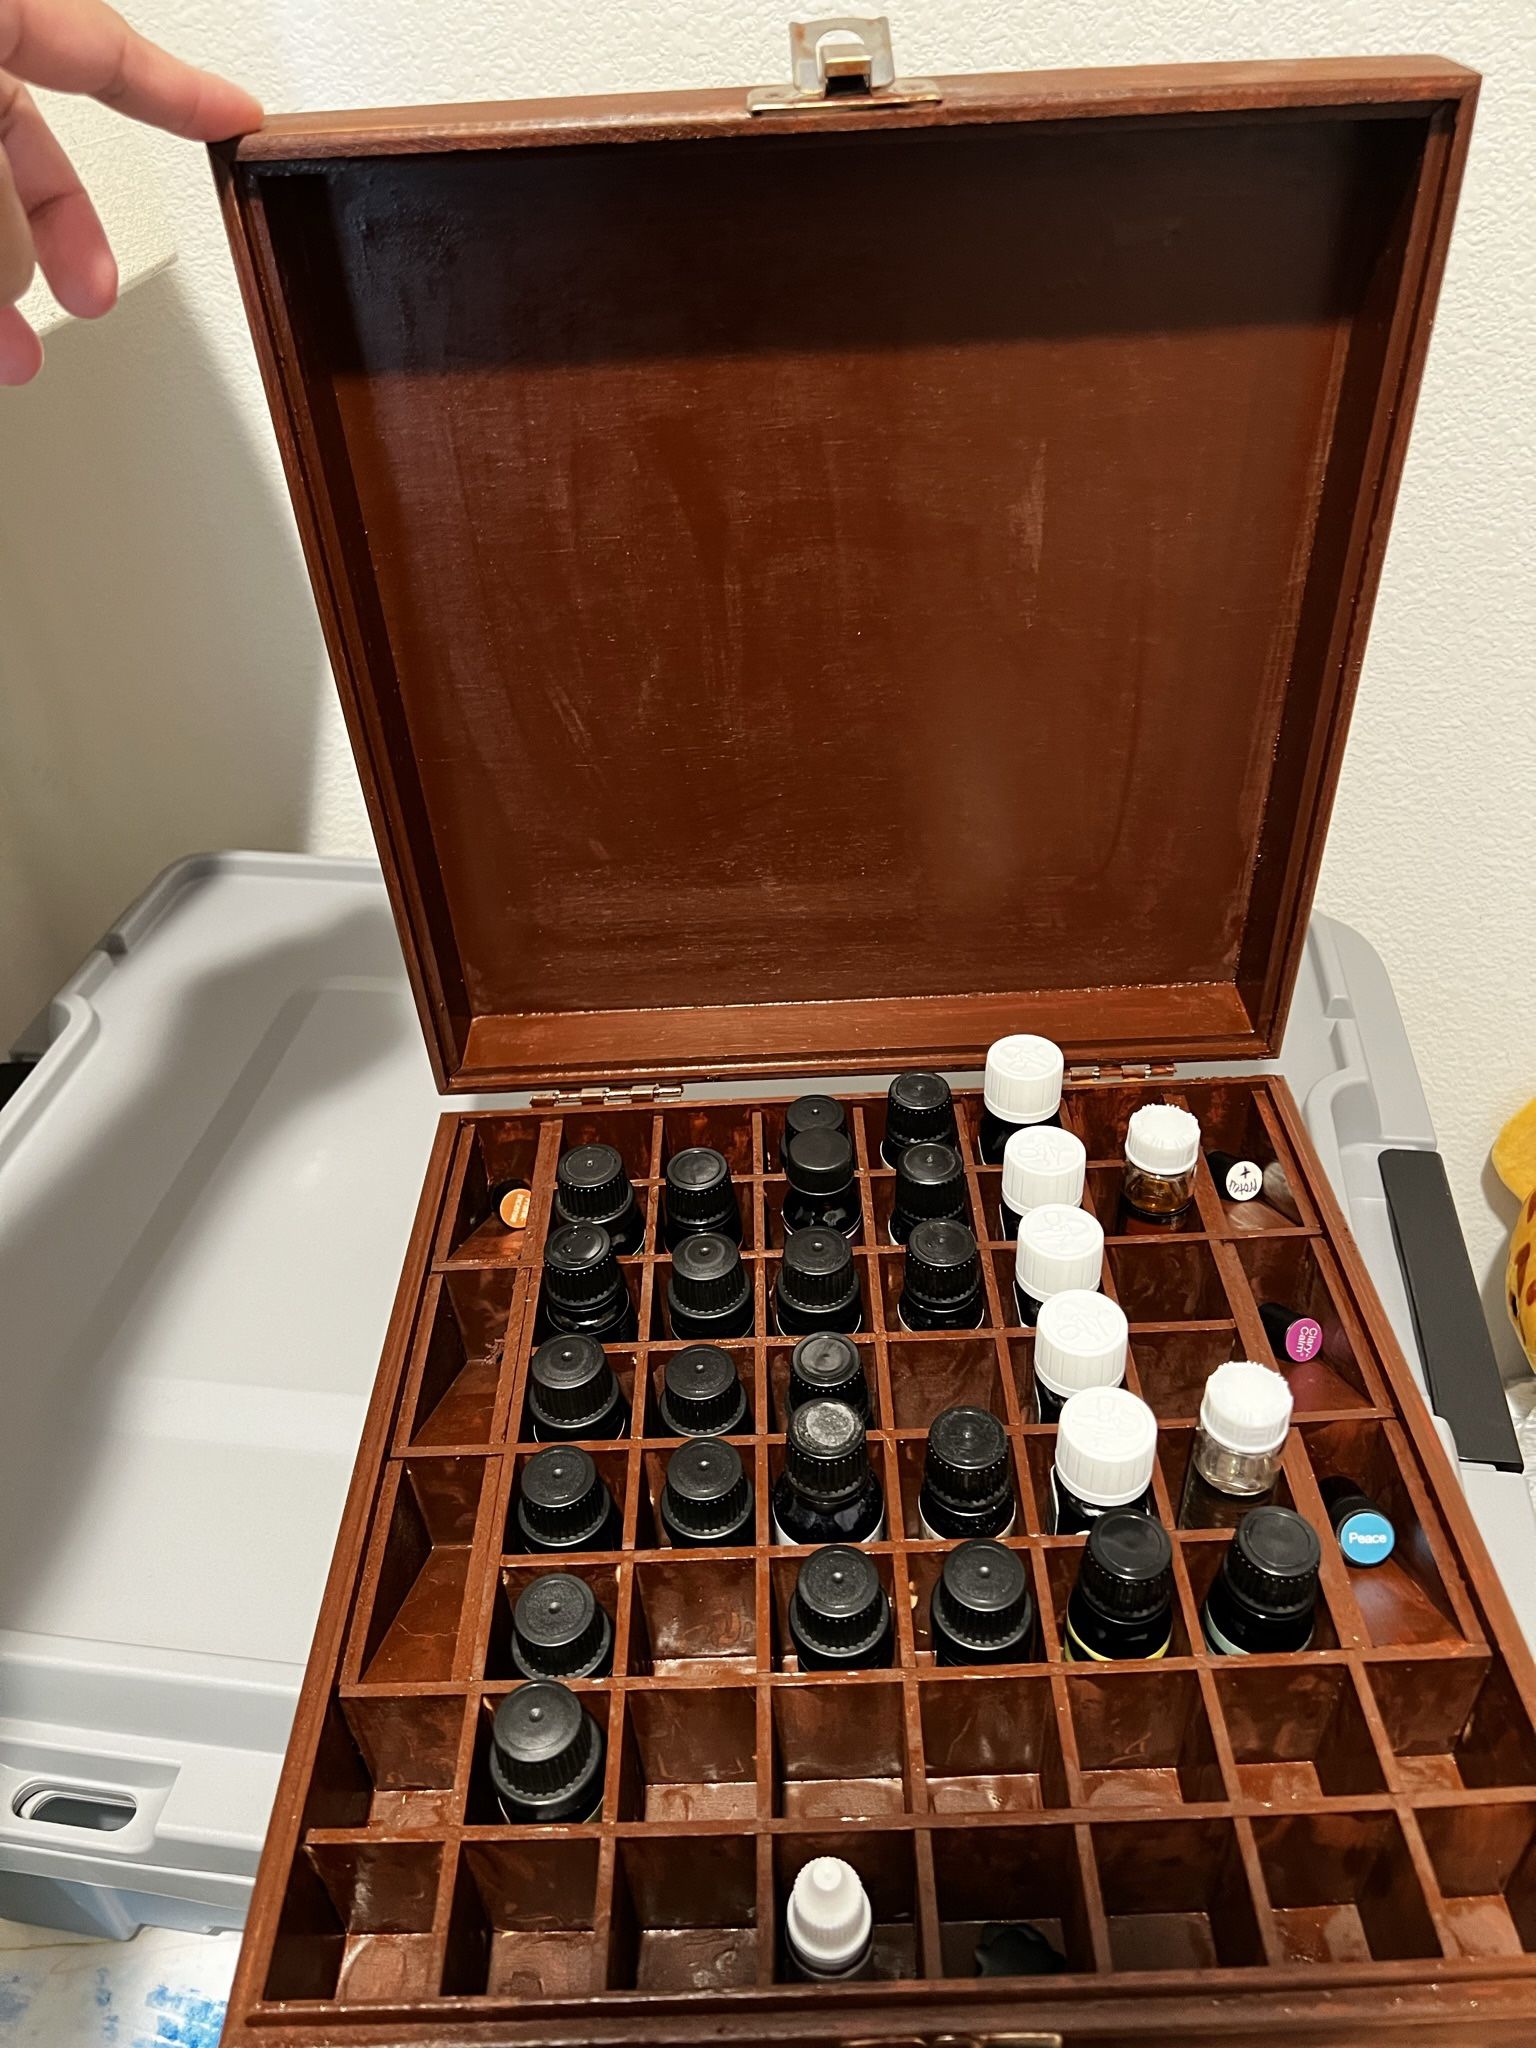 Aromatherapy and box